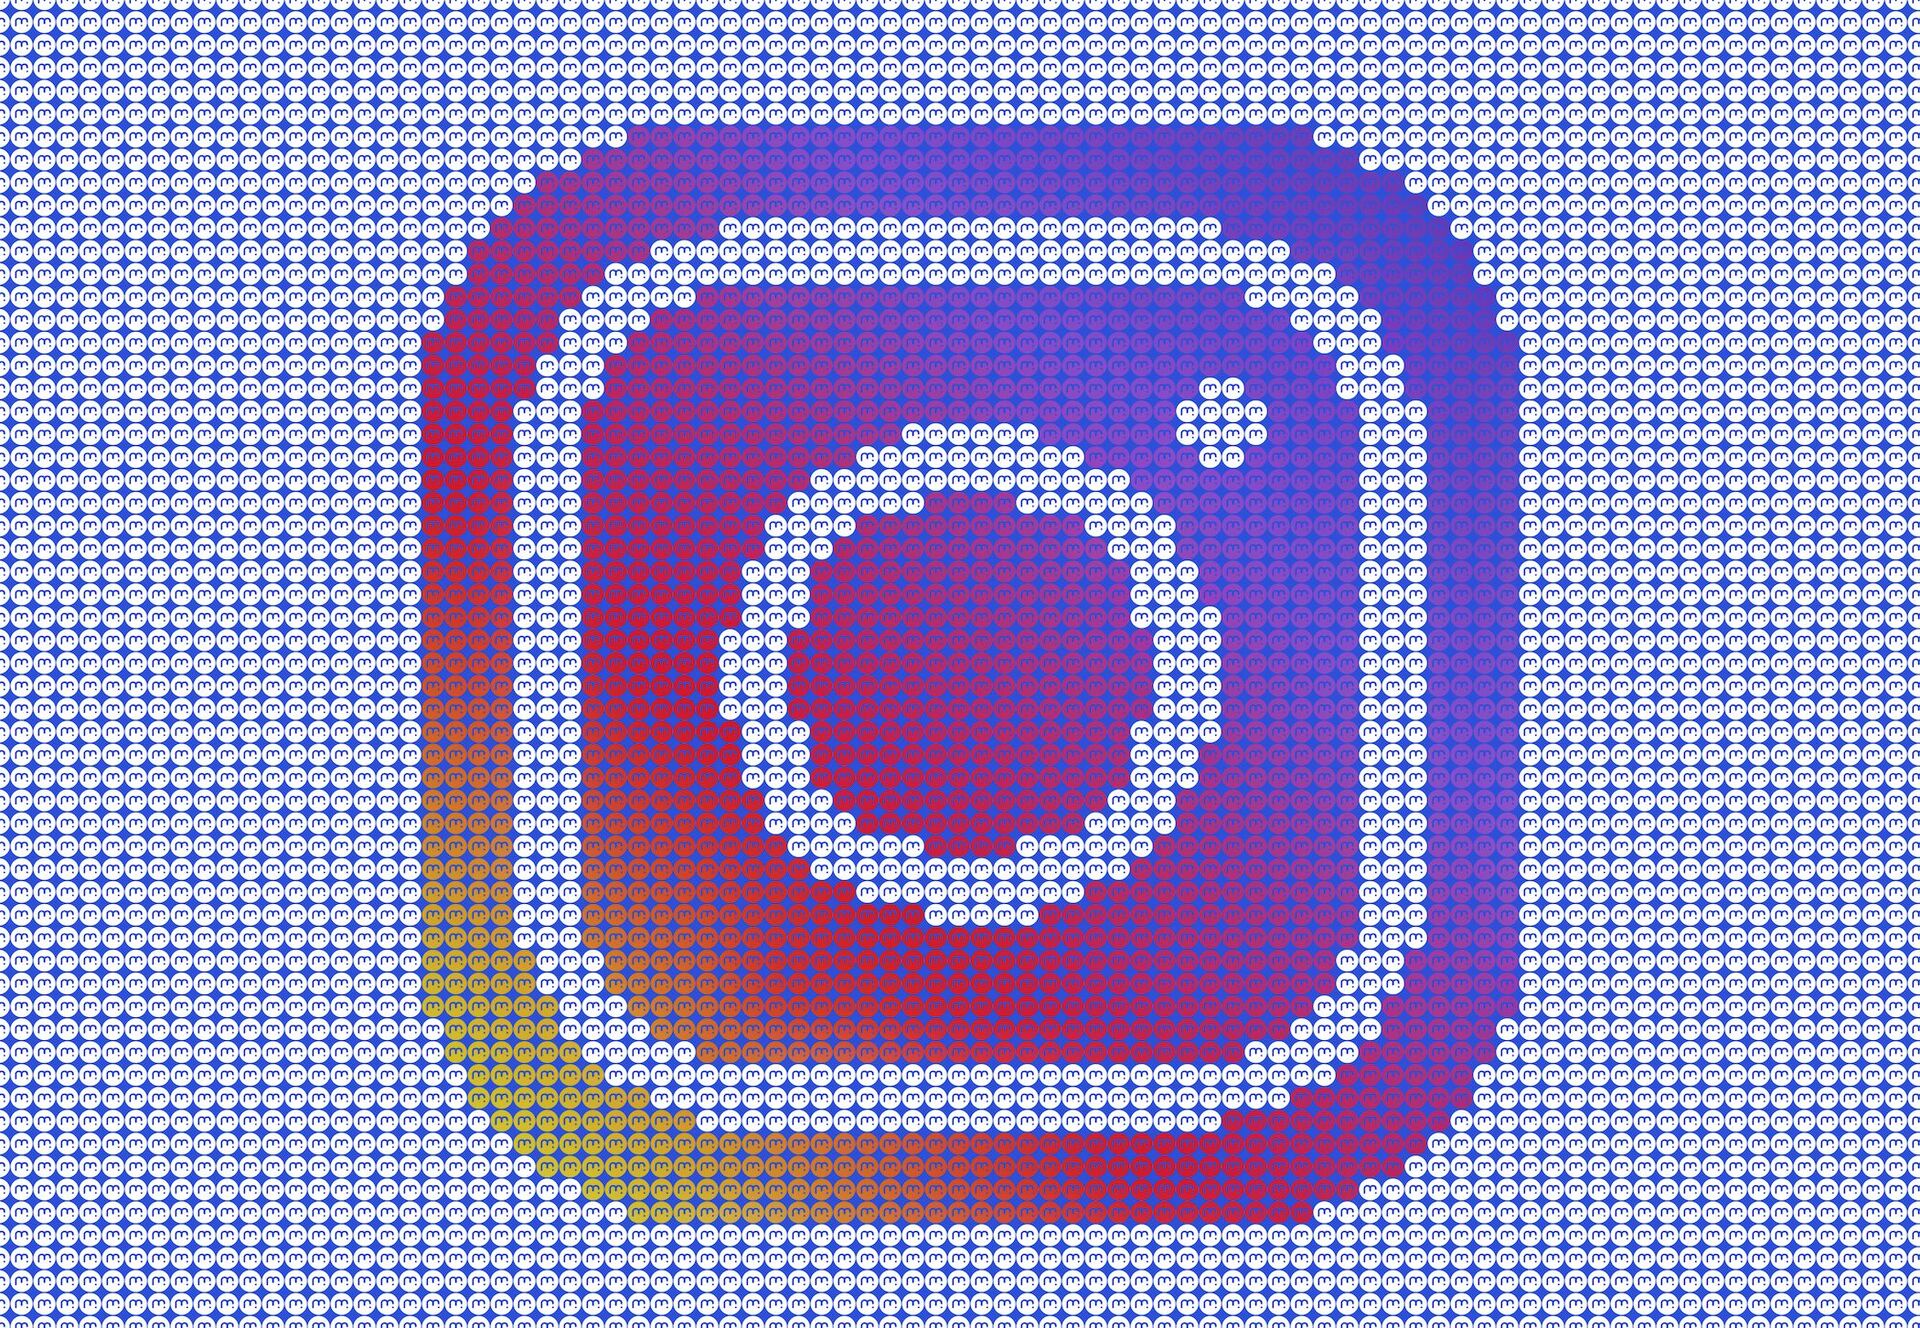 Wallpaper k příležitosti 5 tisíc odběratelů na Instagramu